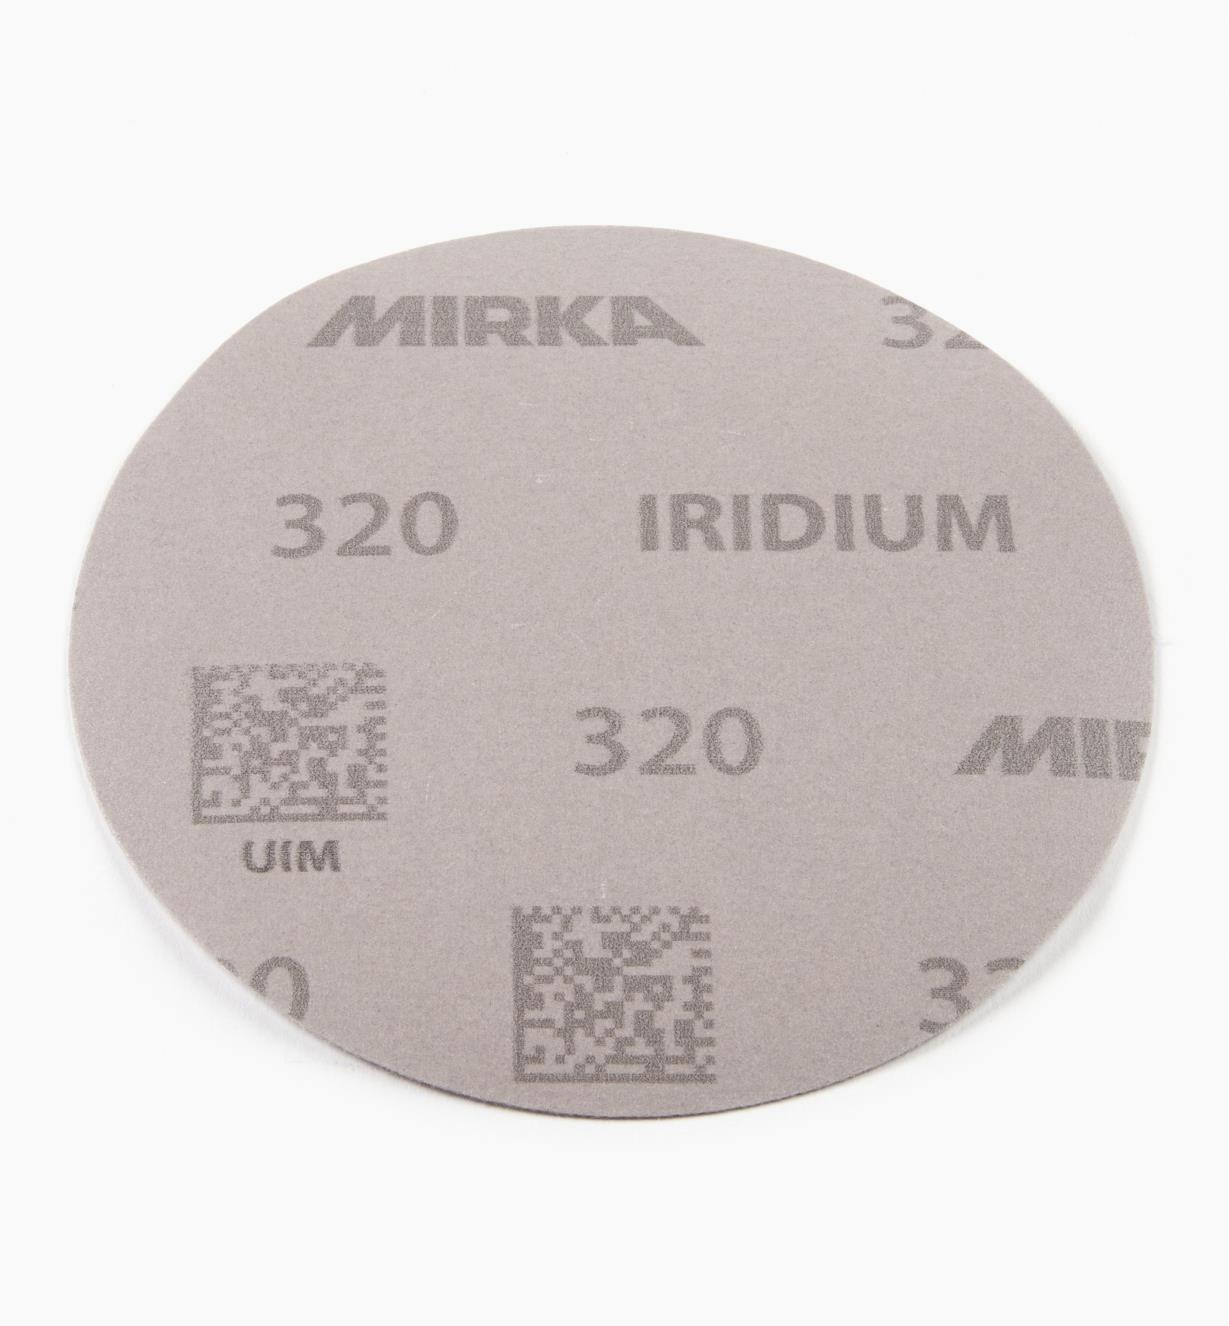 08K0948 - Disque abrasif autoagrippant Iridium, 5 po, sans trous, grain 320, l'unité